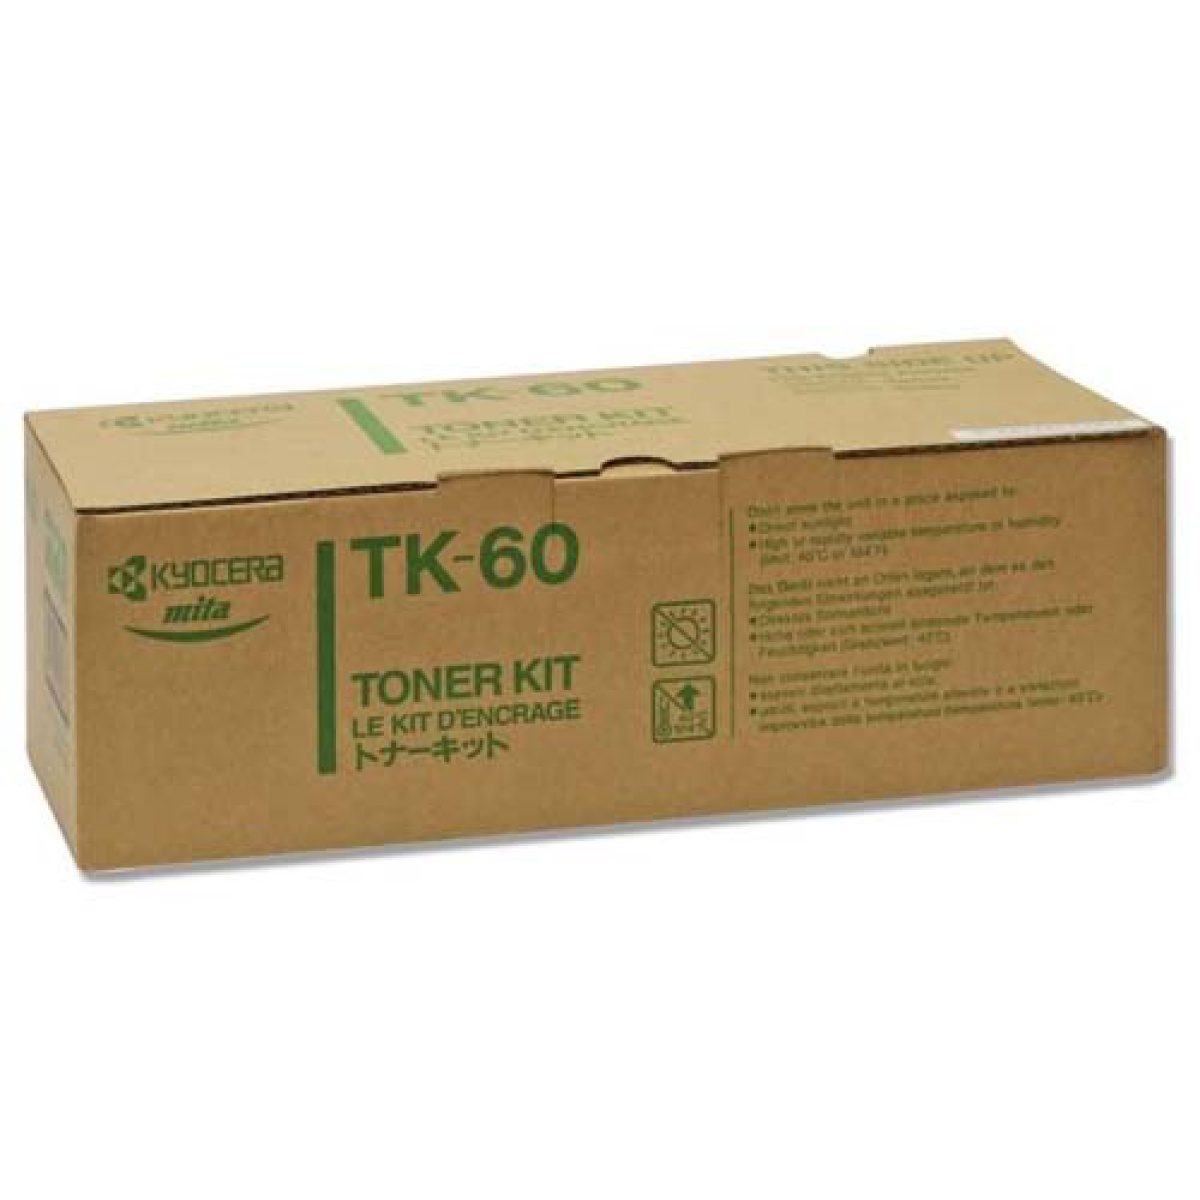 TK-60